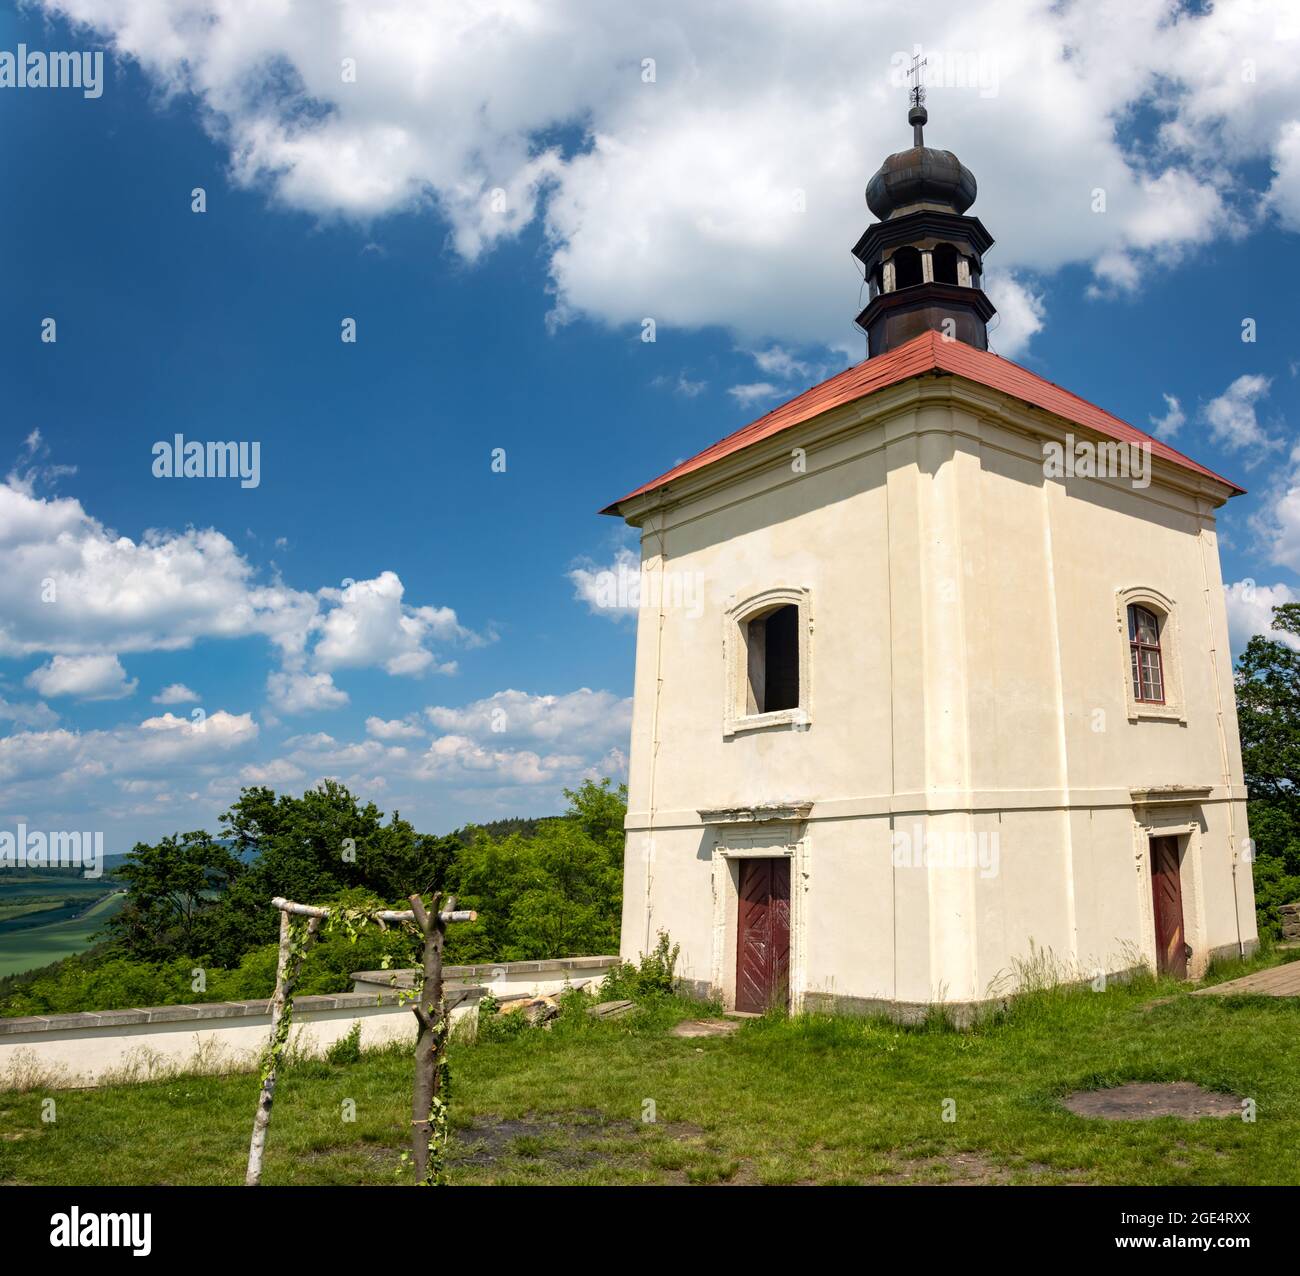 Historische Fronleichnamskapelle auf einem Hügel, Nordböhmen, Tschechien Stockfoto